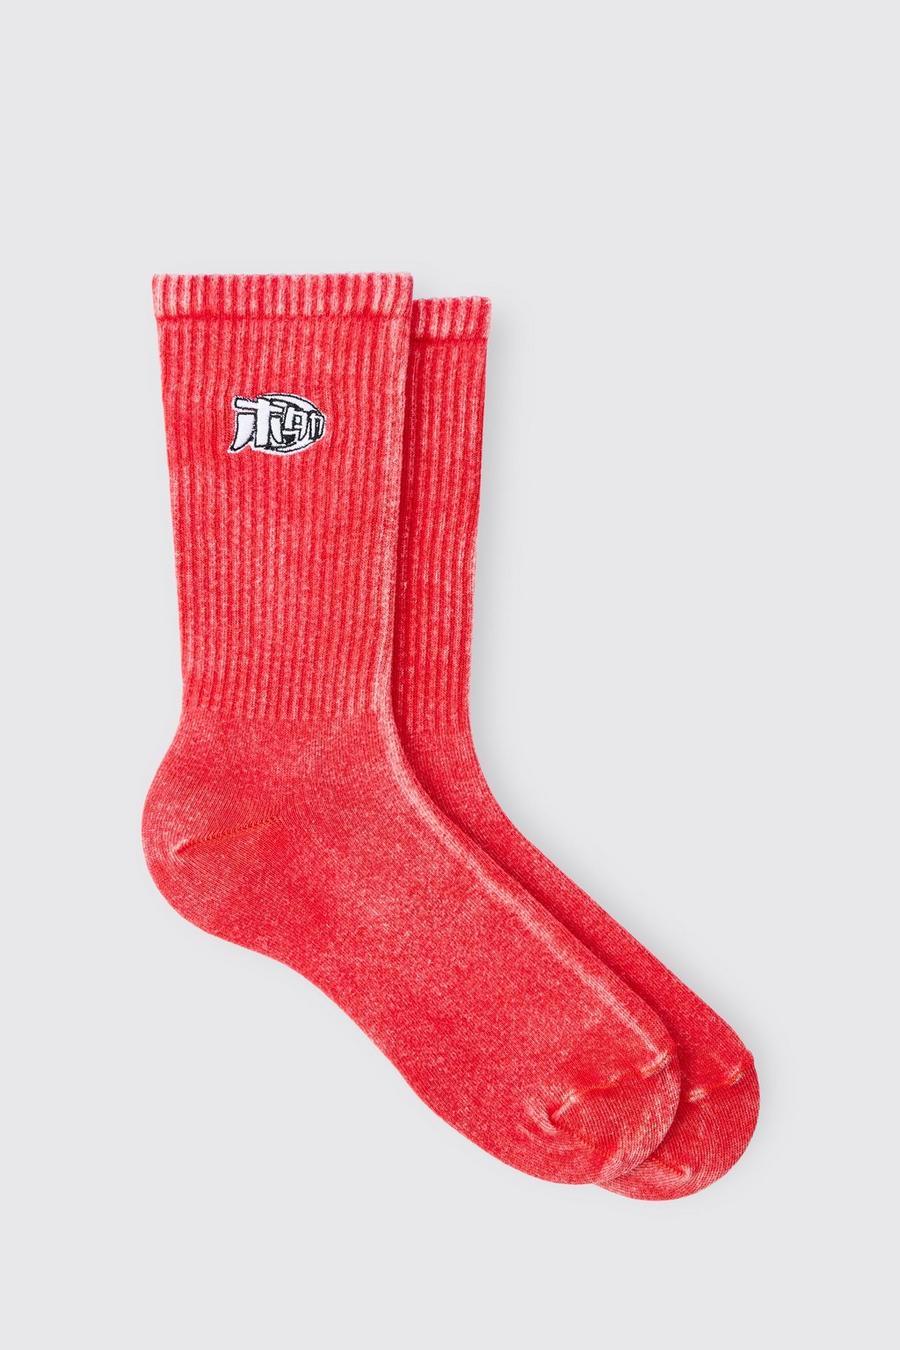 Rote Man Socken mit Acid-Waschung, Red